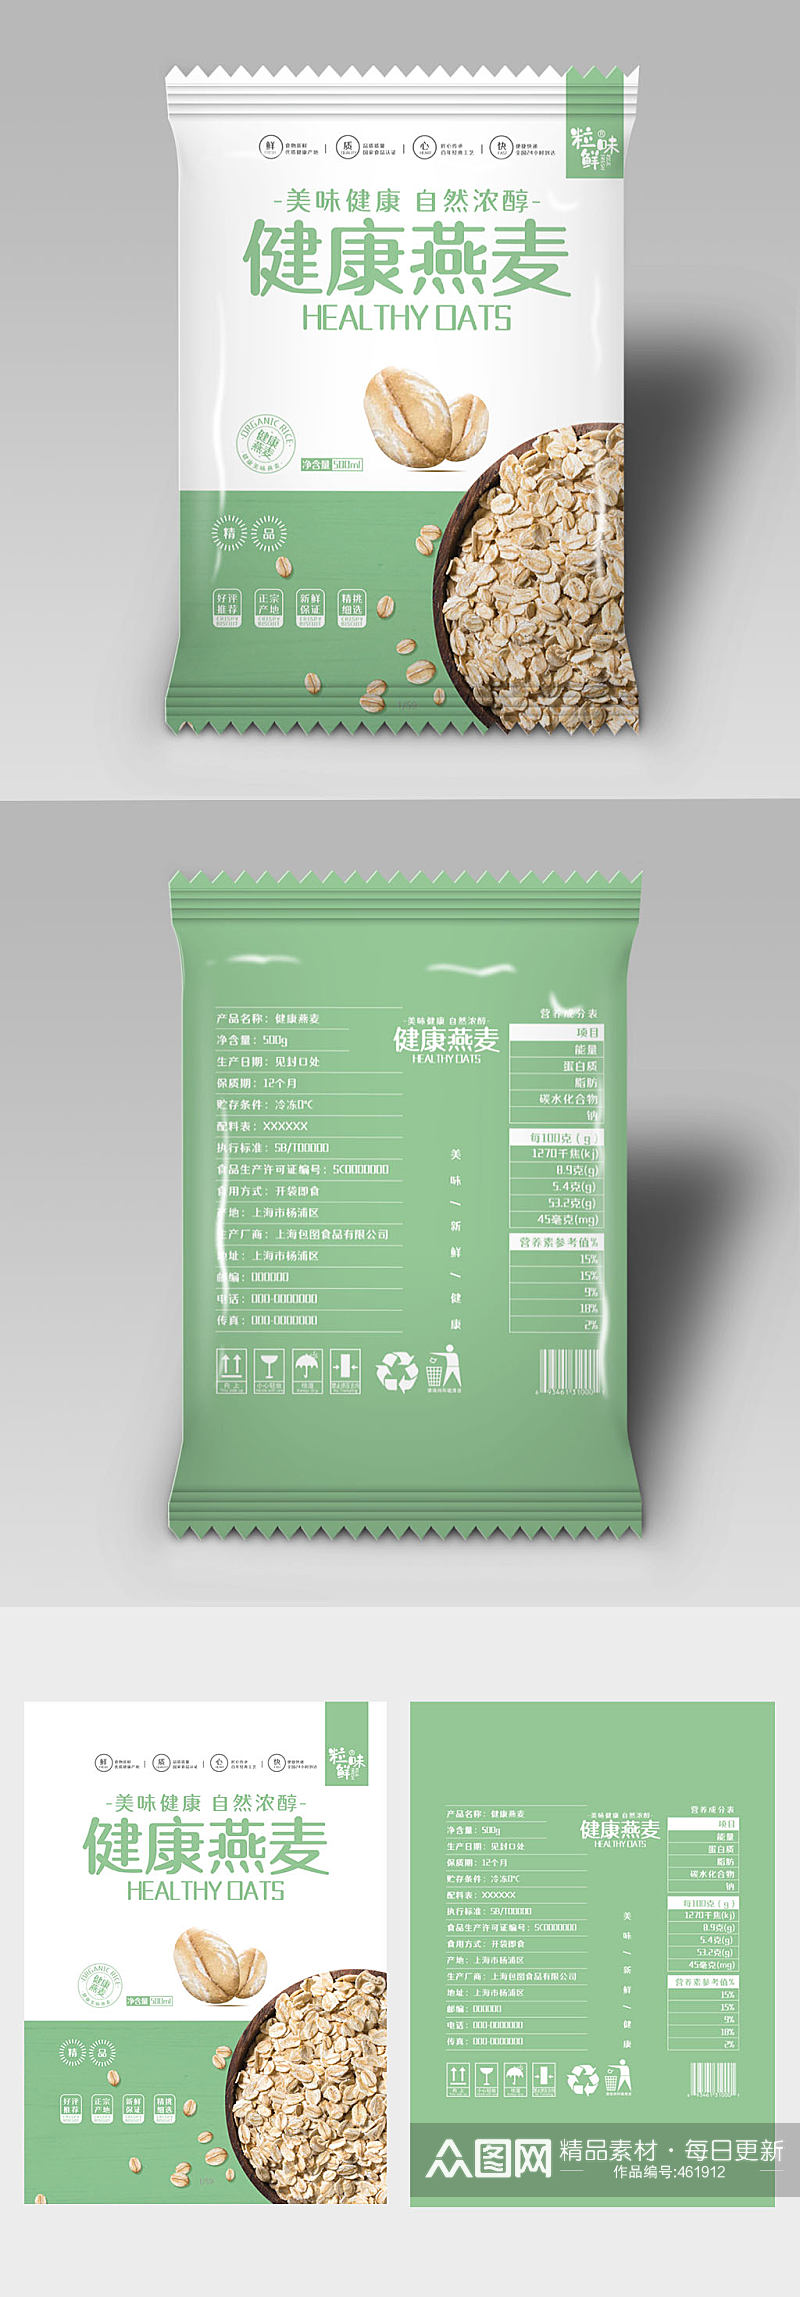 绿色燕麦包装设计素材